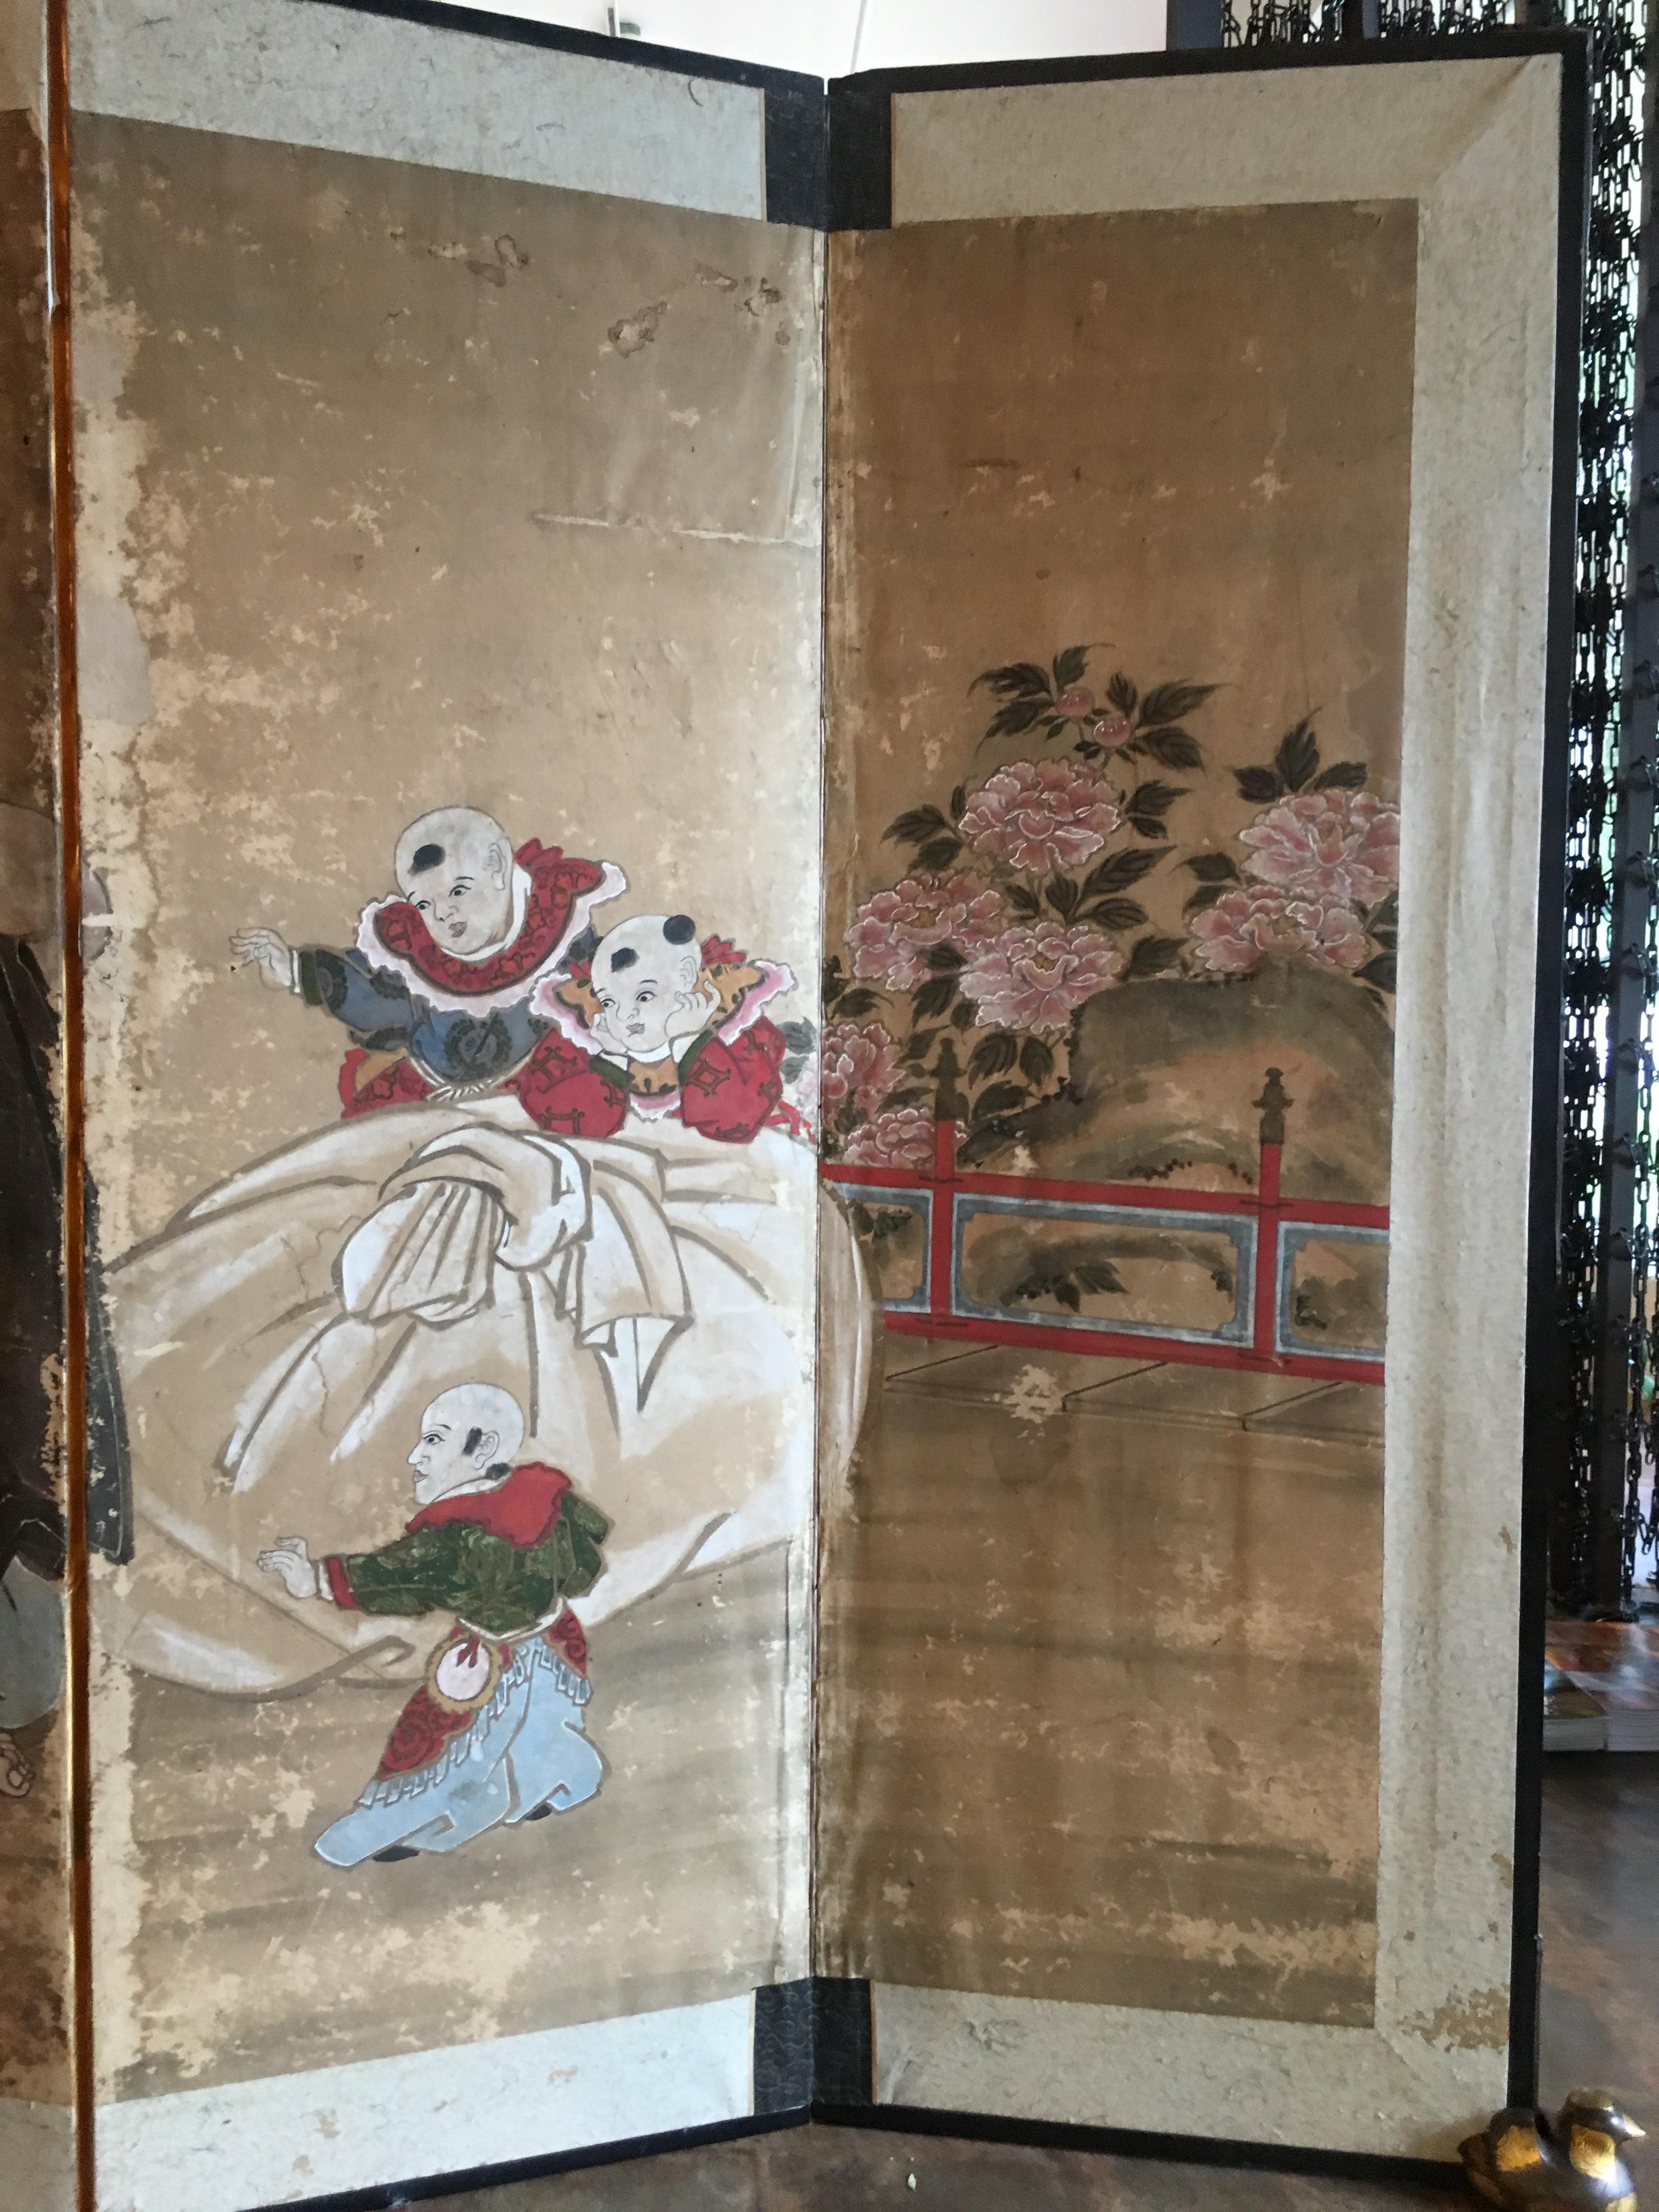 Ravissant paravent japonais en papier peint à six panneaux représentant le personnage bien-aimé Hotei, période Edo, début du XIXe siècle. 

Hotei, appelé Budai en Chine, et connu sous le nom de Bouddha rieur ou de Bouddha gras en Occident, est